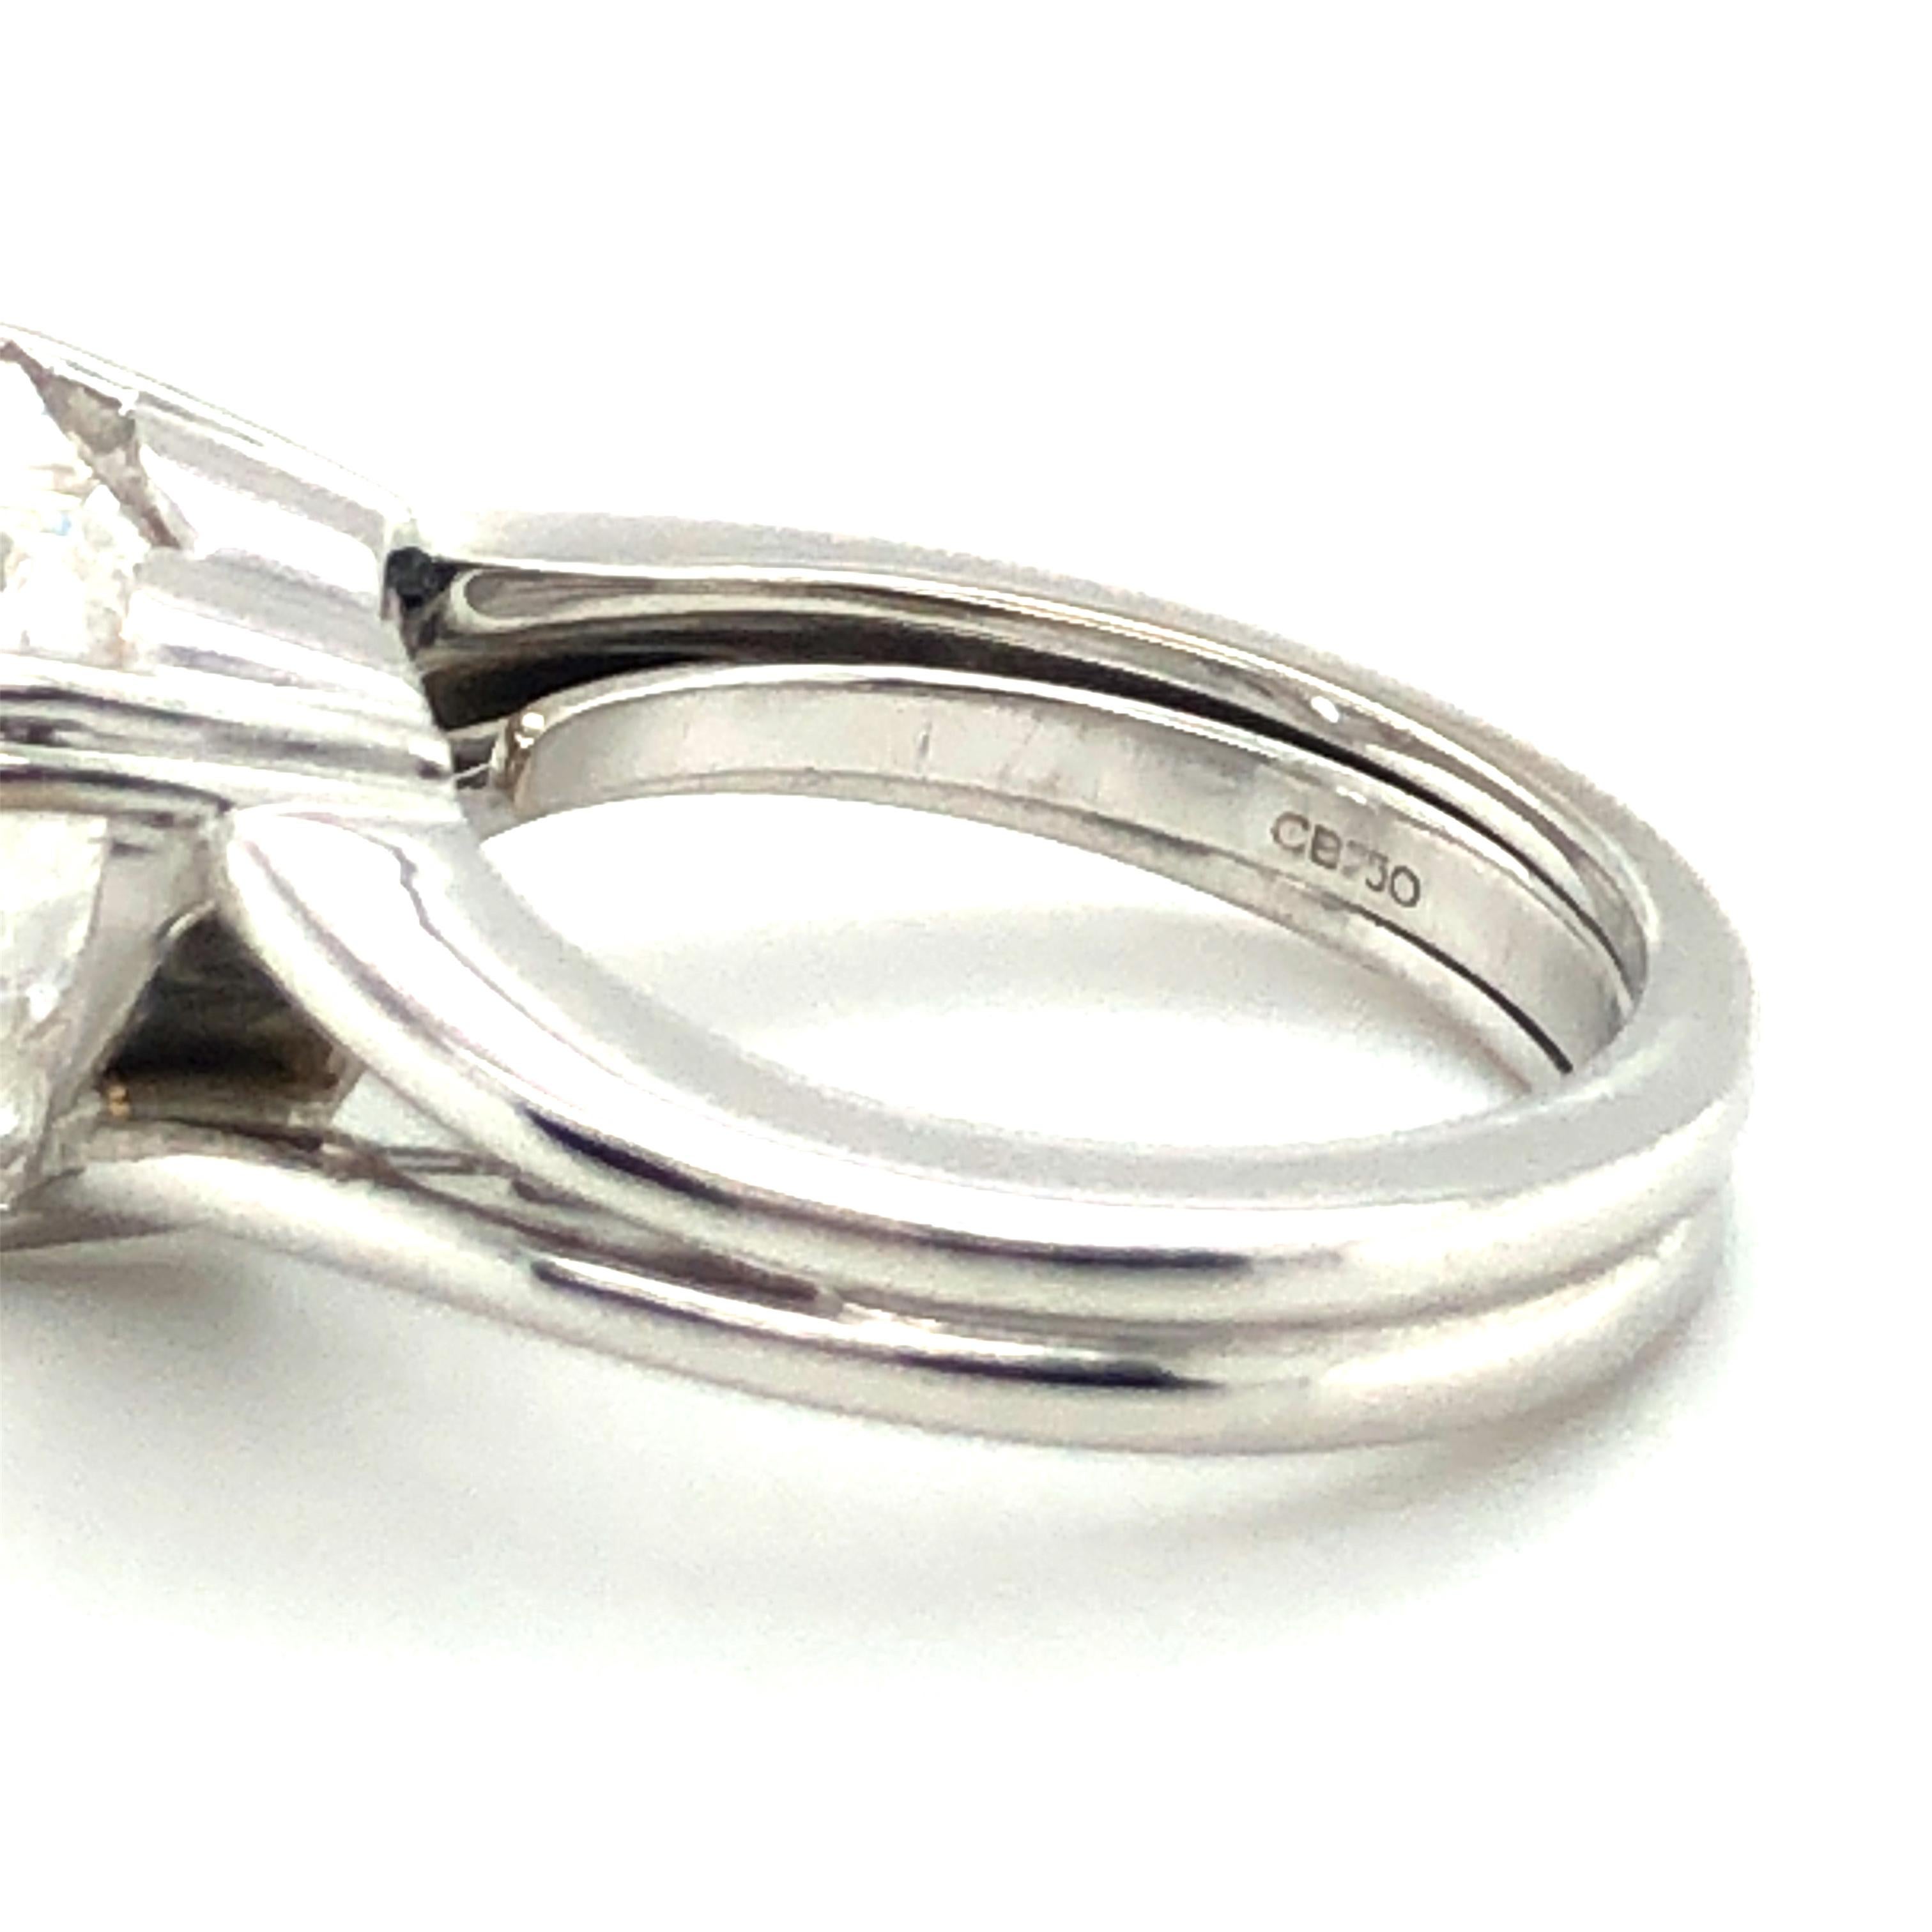 GIA Certified 5.04 Carat Heart-Shaped Diamond Ring in 18 Karat White Gold 1